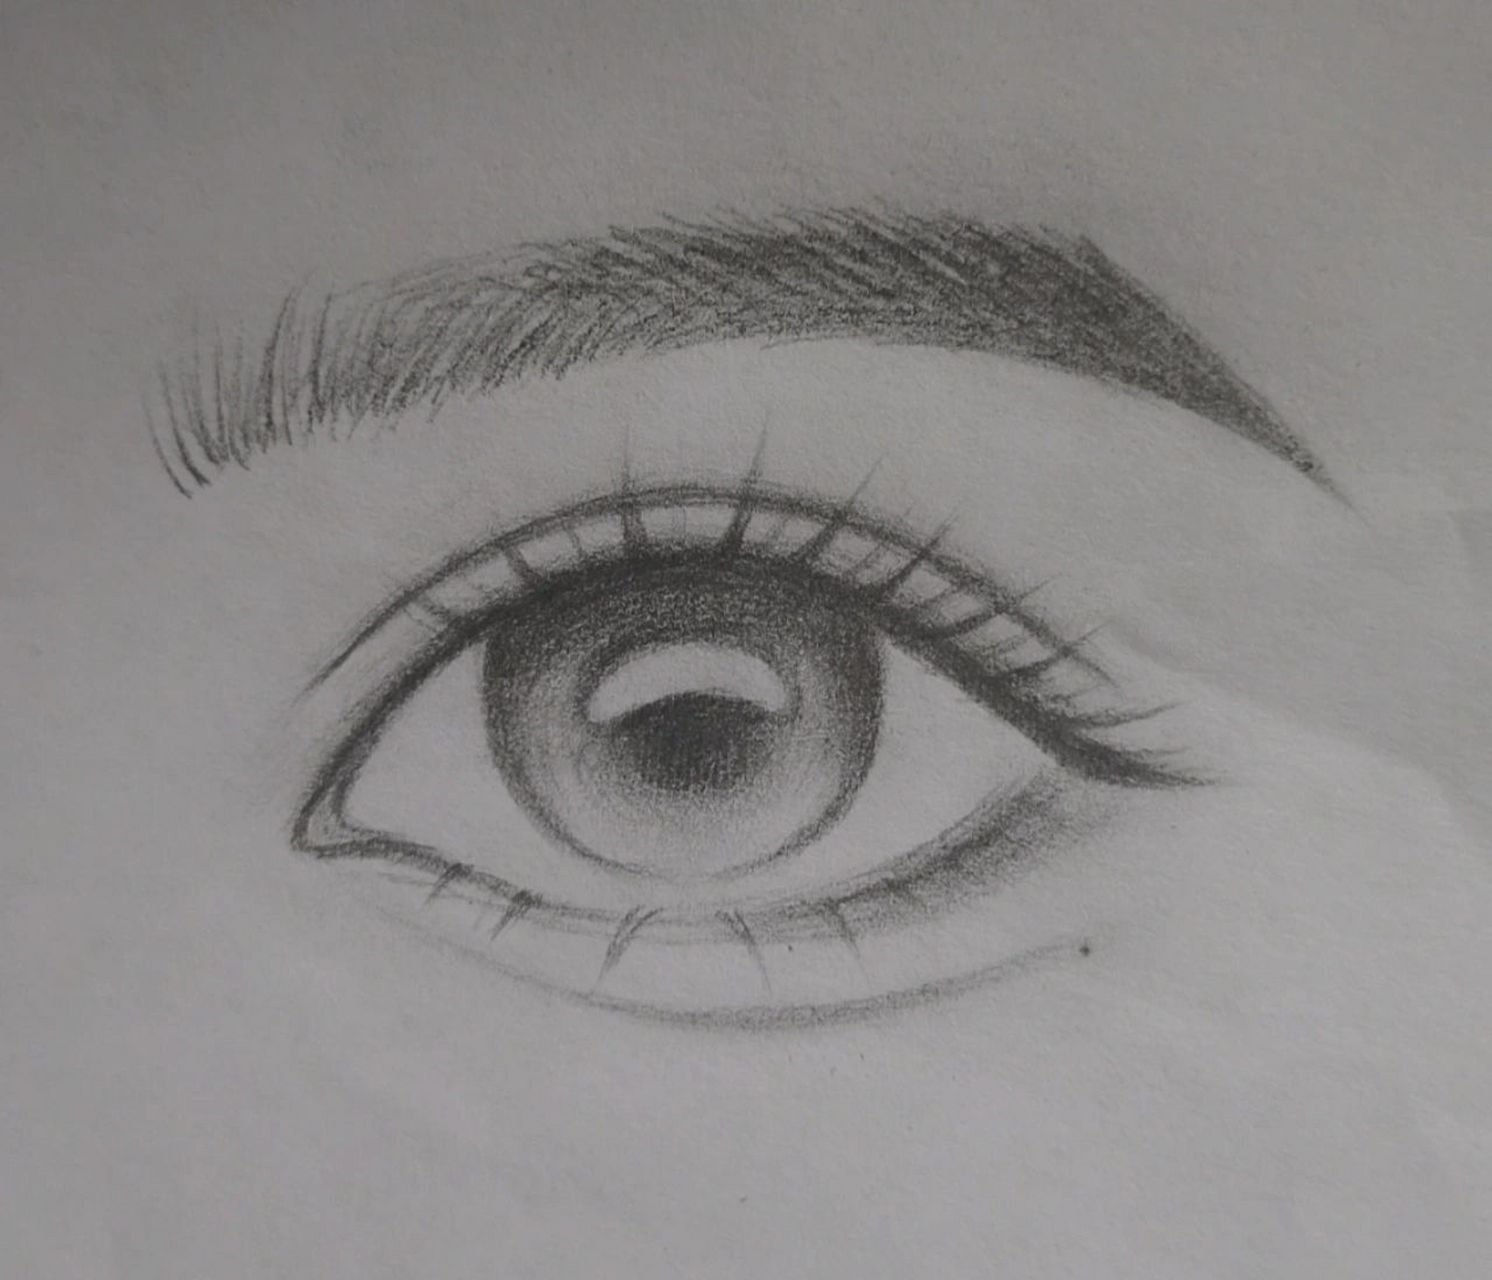 第二步,画出双眼皮线条,再描粗眼睛轮廓线,并画出眼球(注意眼球颜色